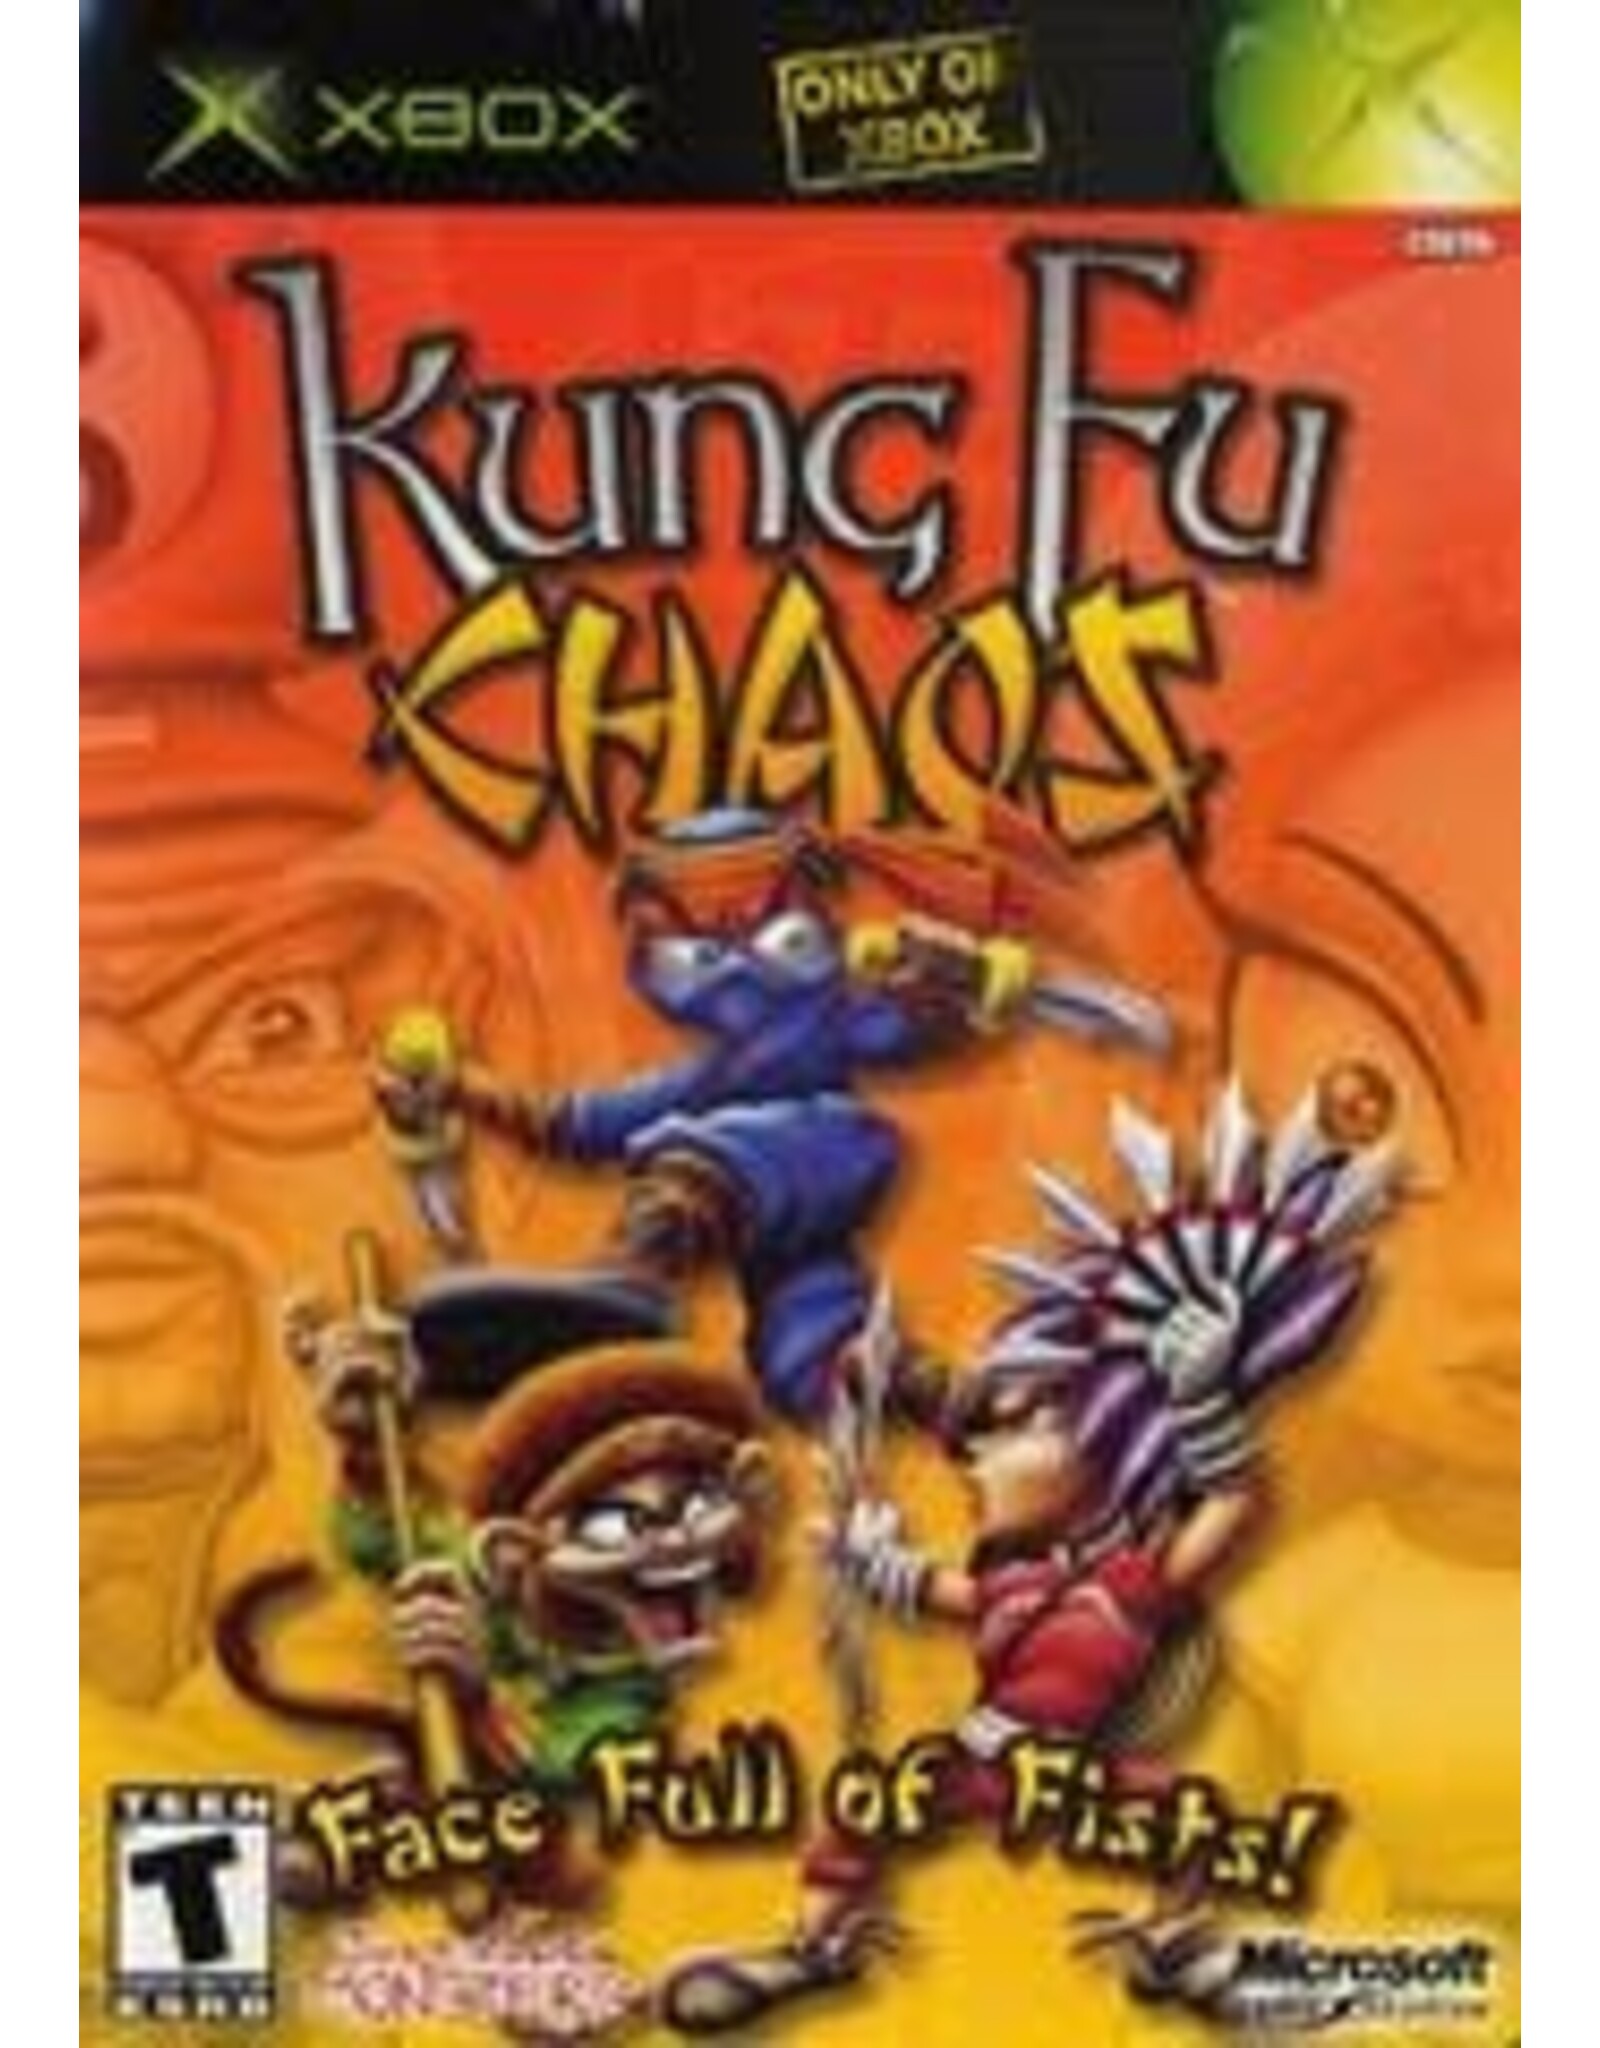 Xbox Kung Fu Chaos (CiB)